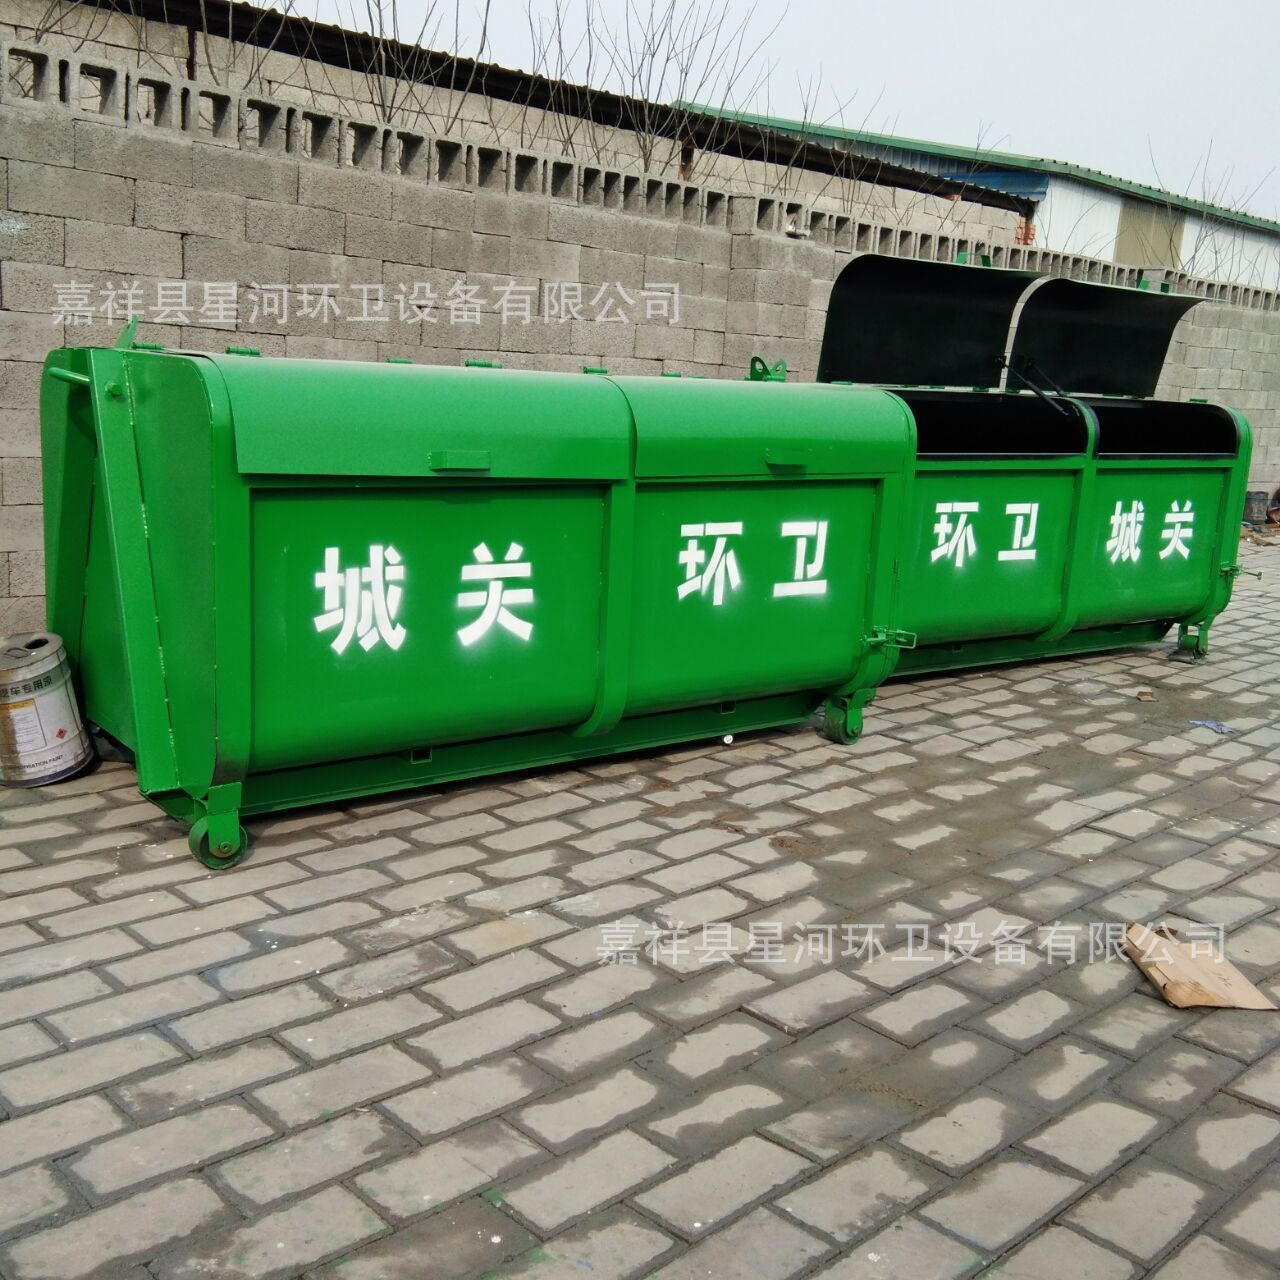 垃圾箱垃圾收集箱垃圾车专用垃圾箱订做垃圾箱示例图1